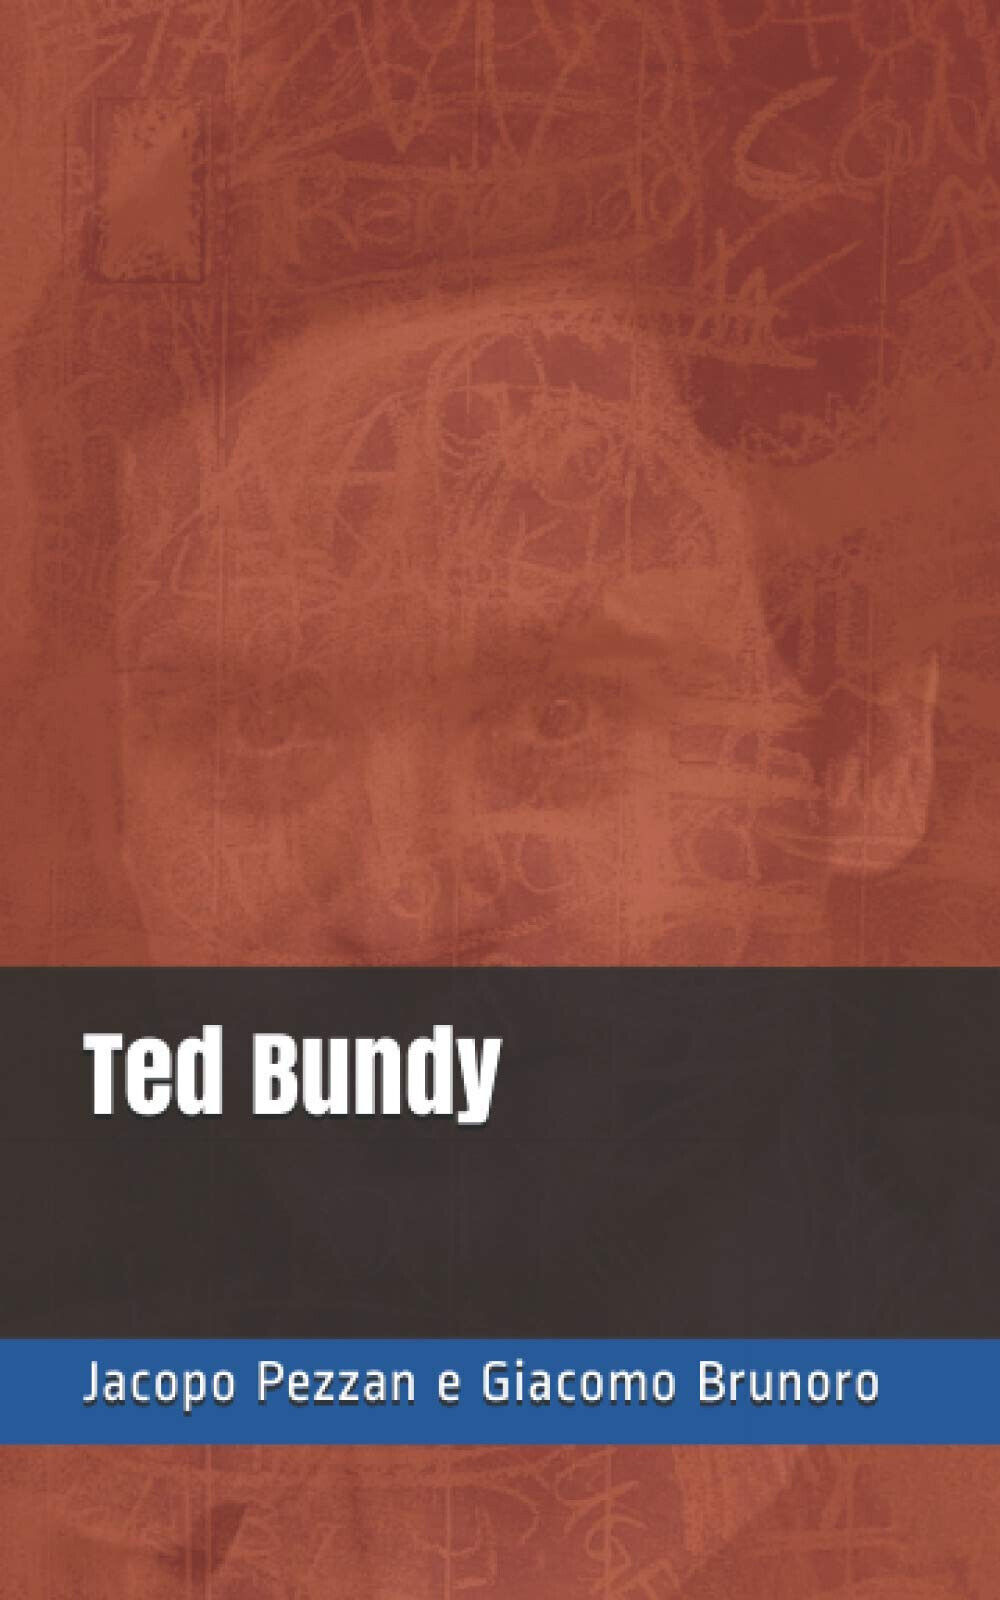 Ted Bundy - Brunoro Giacomo,  Pezzan Jacopo - Independently Published, 2021